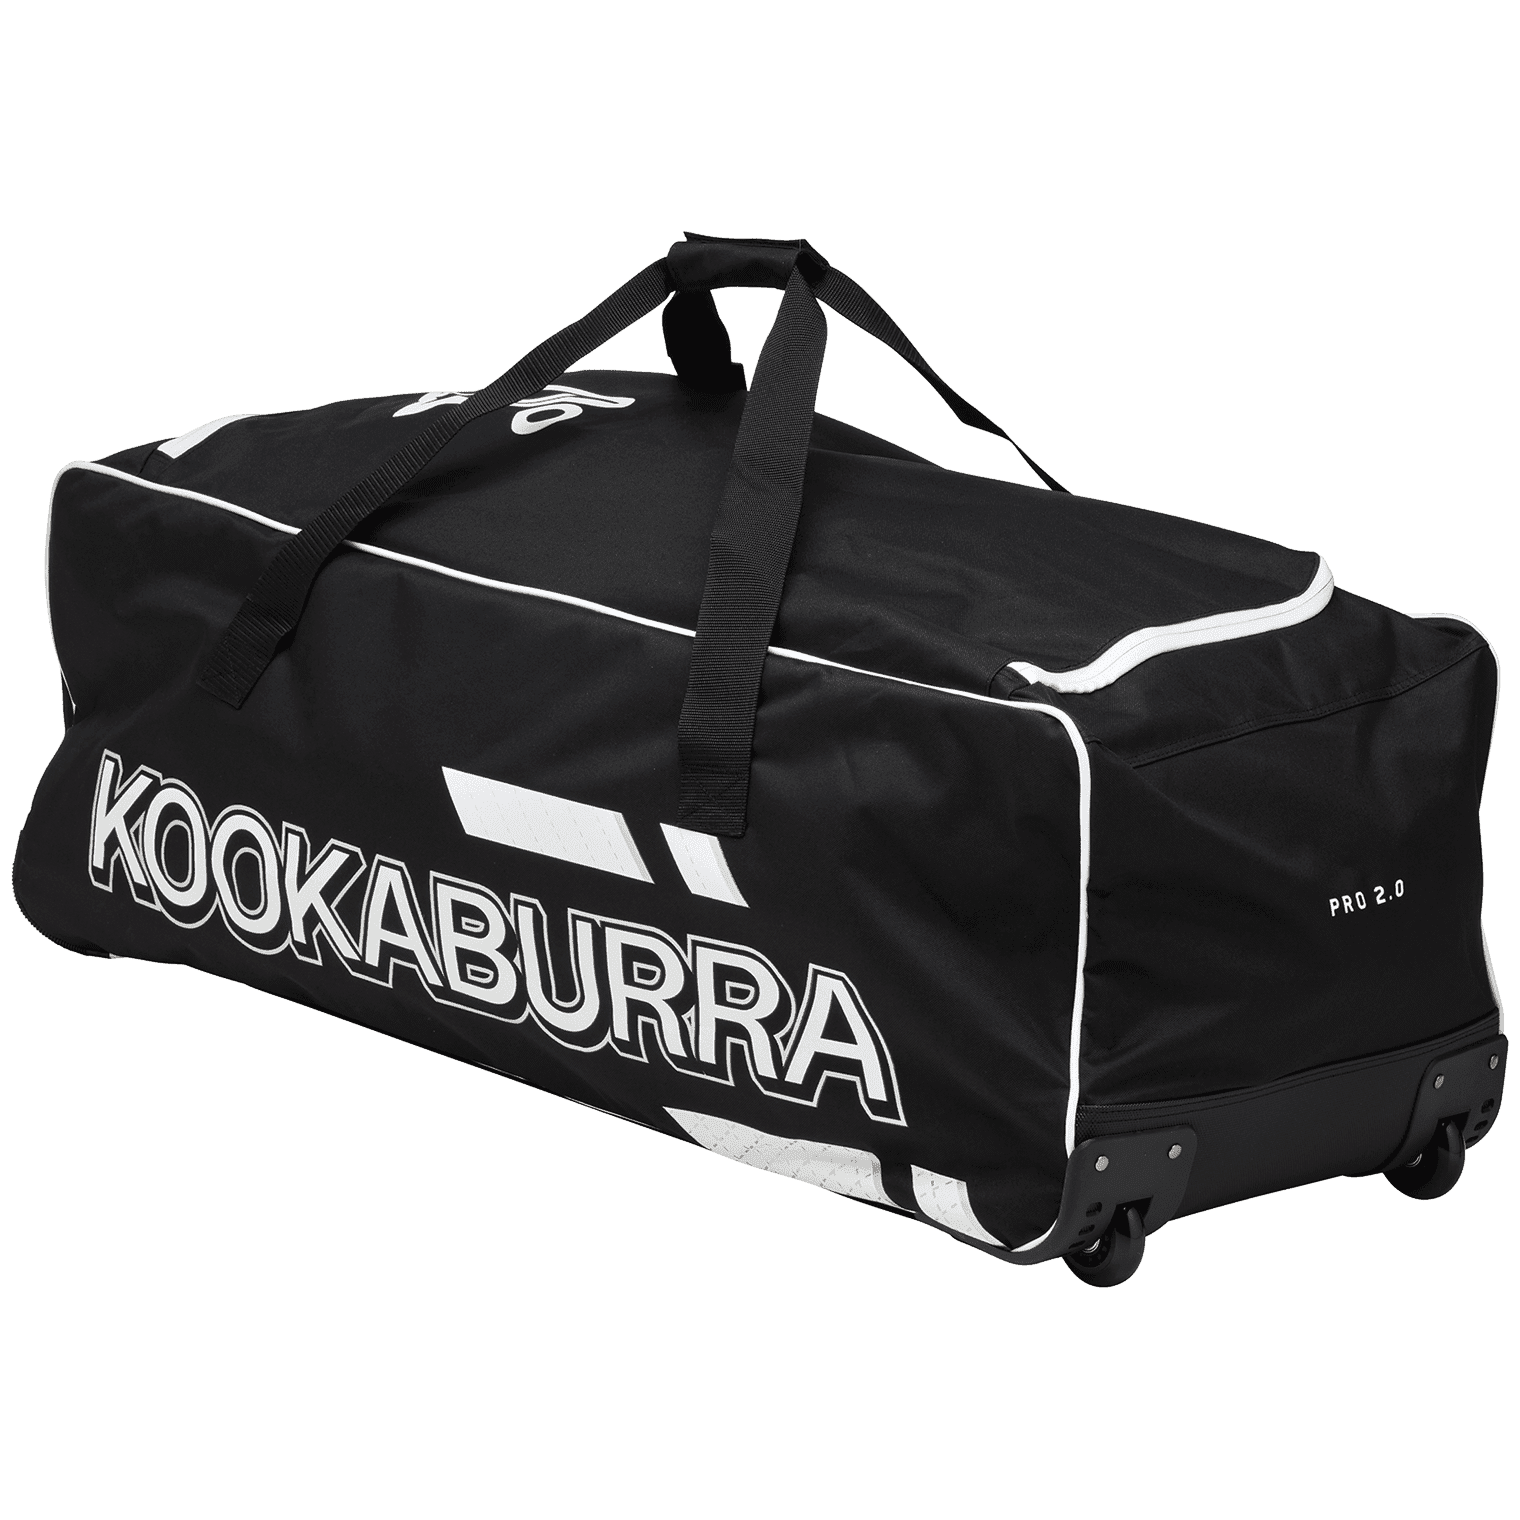 Kookaburra Cricket Bags Kookaburra 2.0 Wheelie Cricket Bag